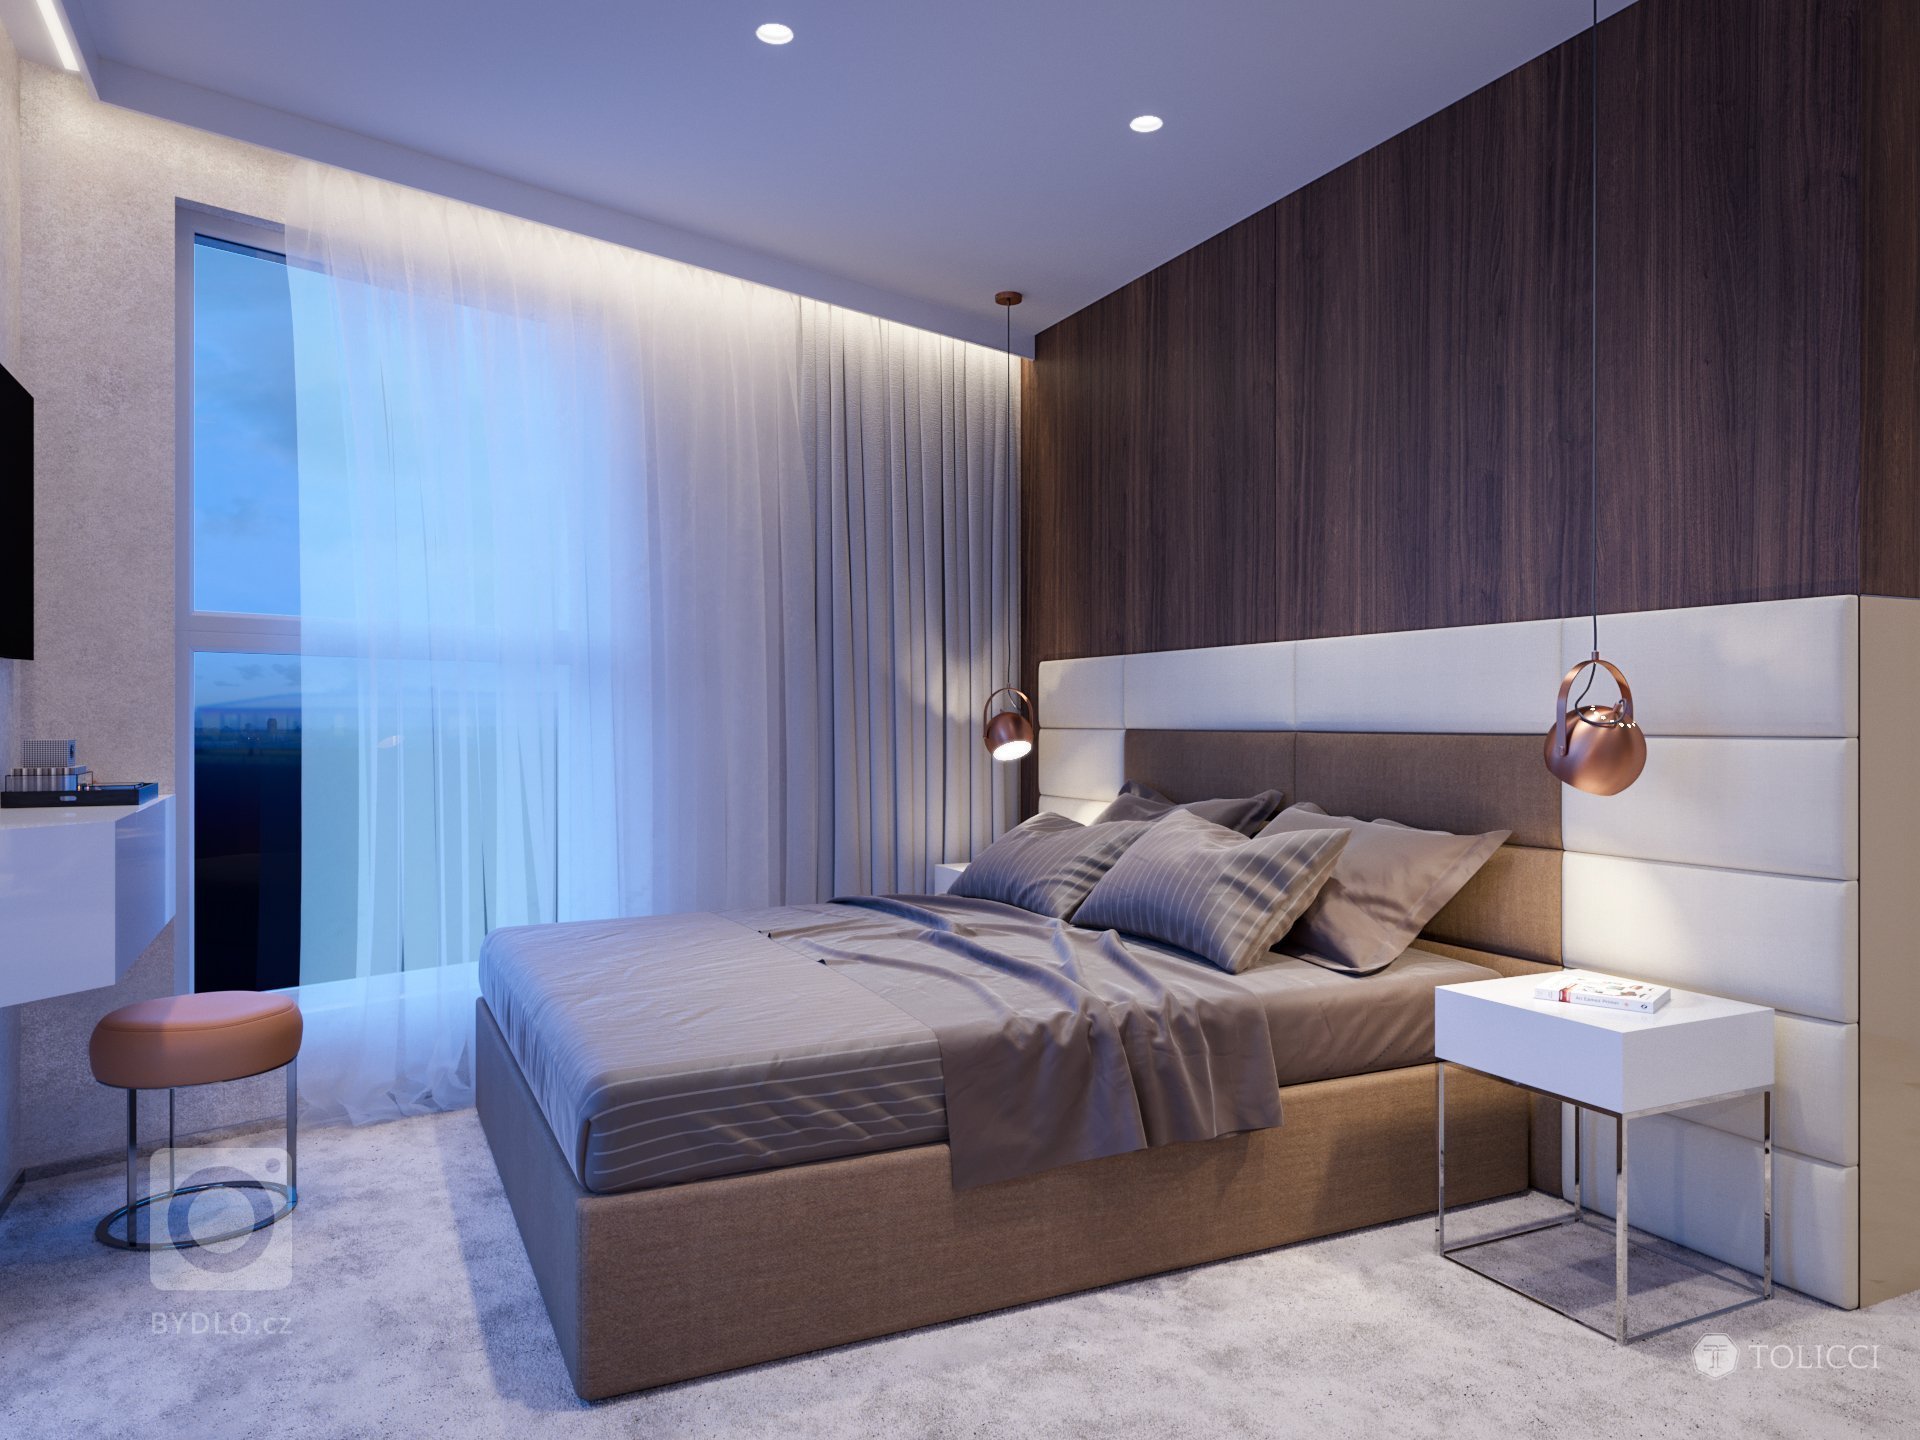 Návrh interiéru bytového apartmánu reprezentuje vytvorenie elegantného a nestarnúceho dizajnu. Vhodná kontrastná kombinácia tmavého orechového dreva a teplých…